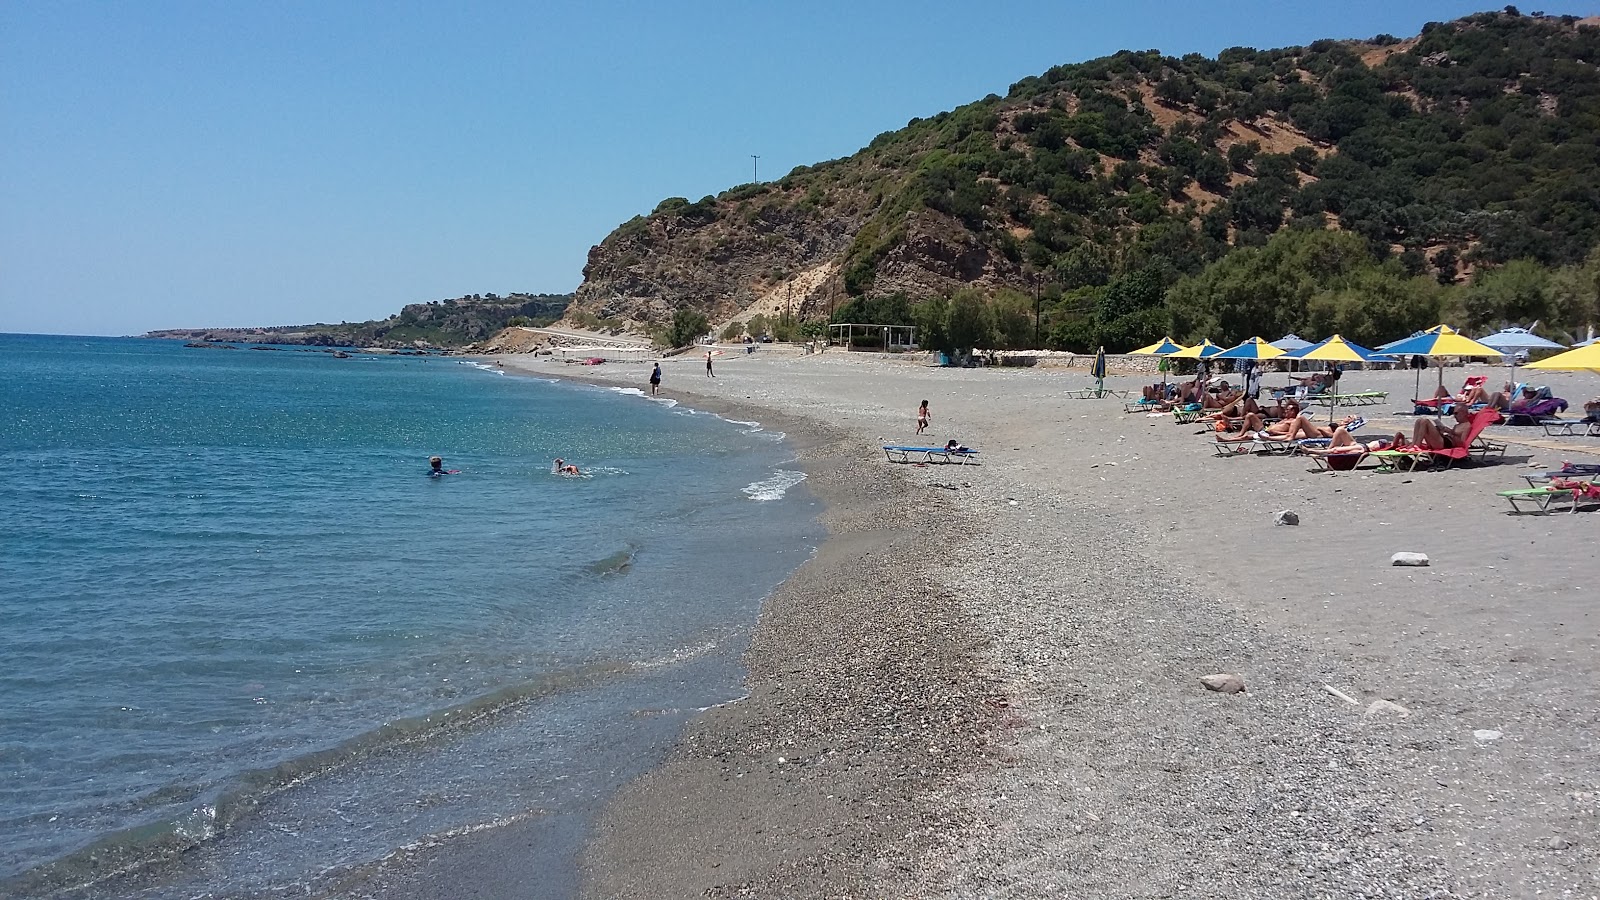 Photo of Korakas beach and its beautiful scenery